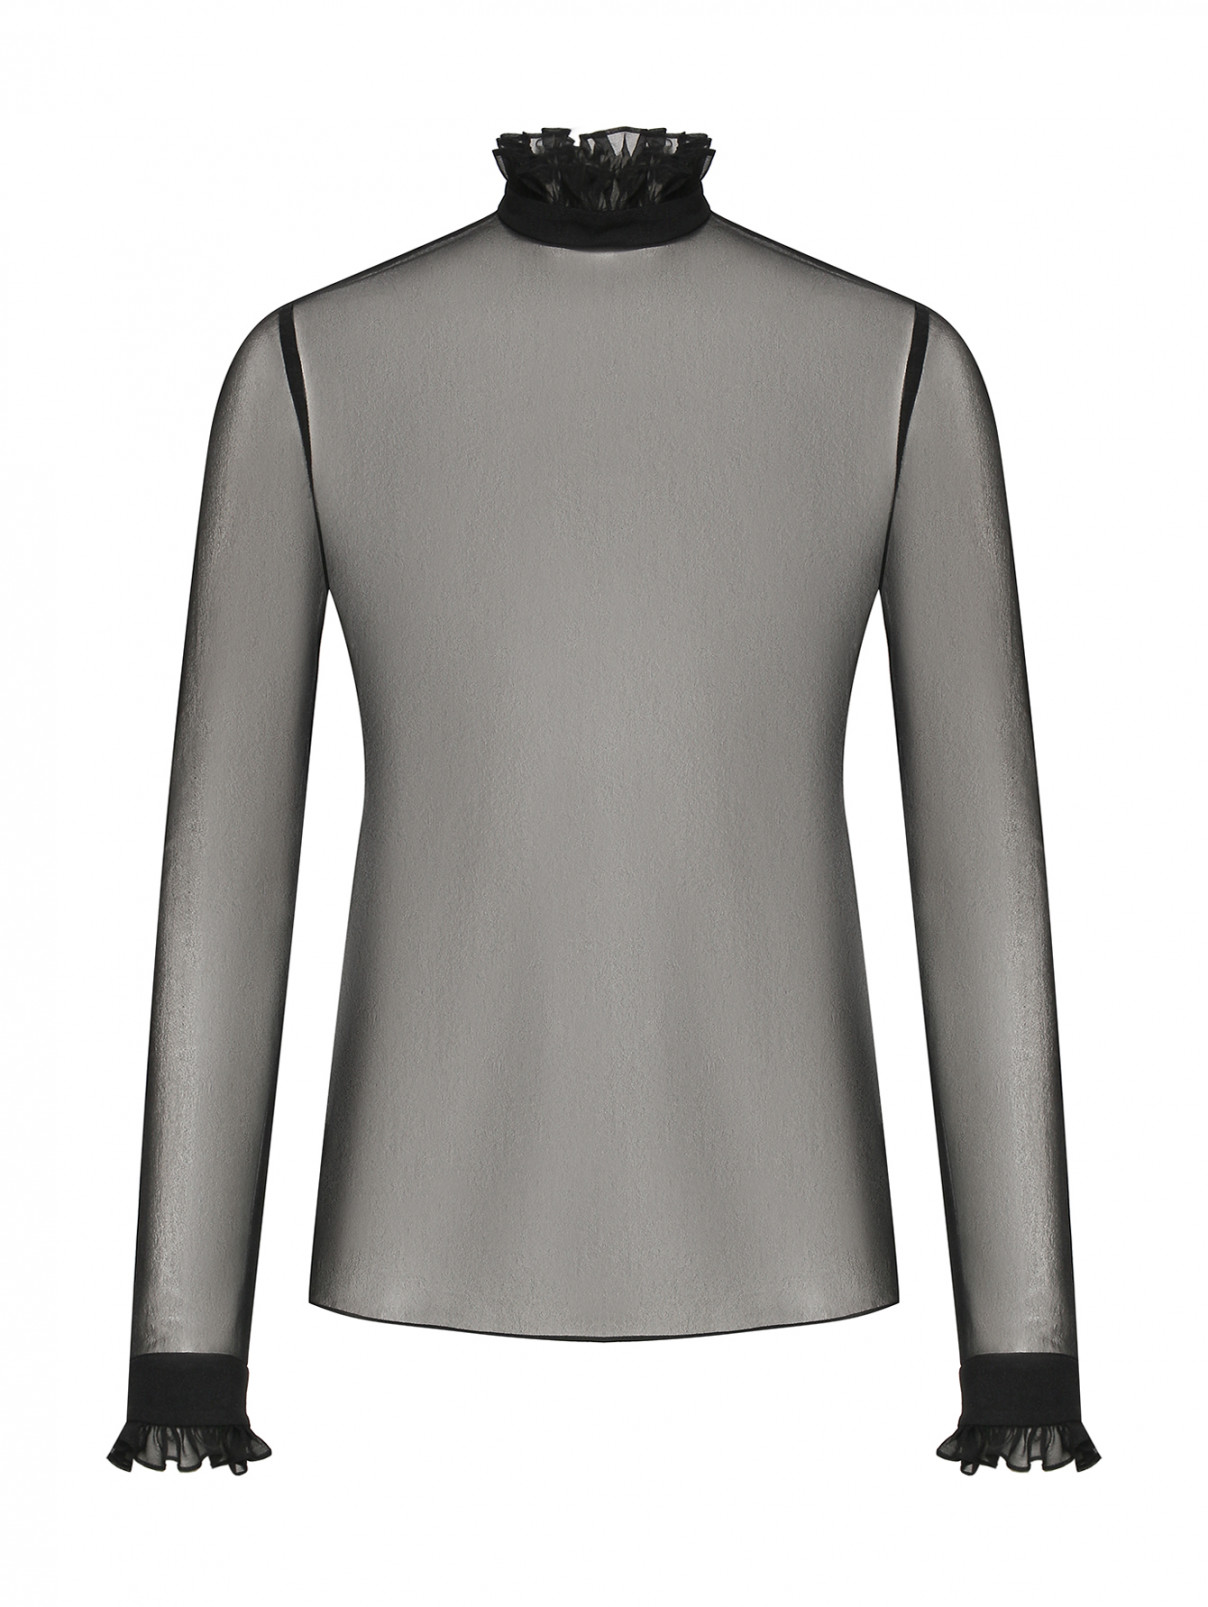 Полупрозрачная блуза со сборками Philosophy di Lorenzo Serafini  –  Общий вид  – Цвет:  Черный